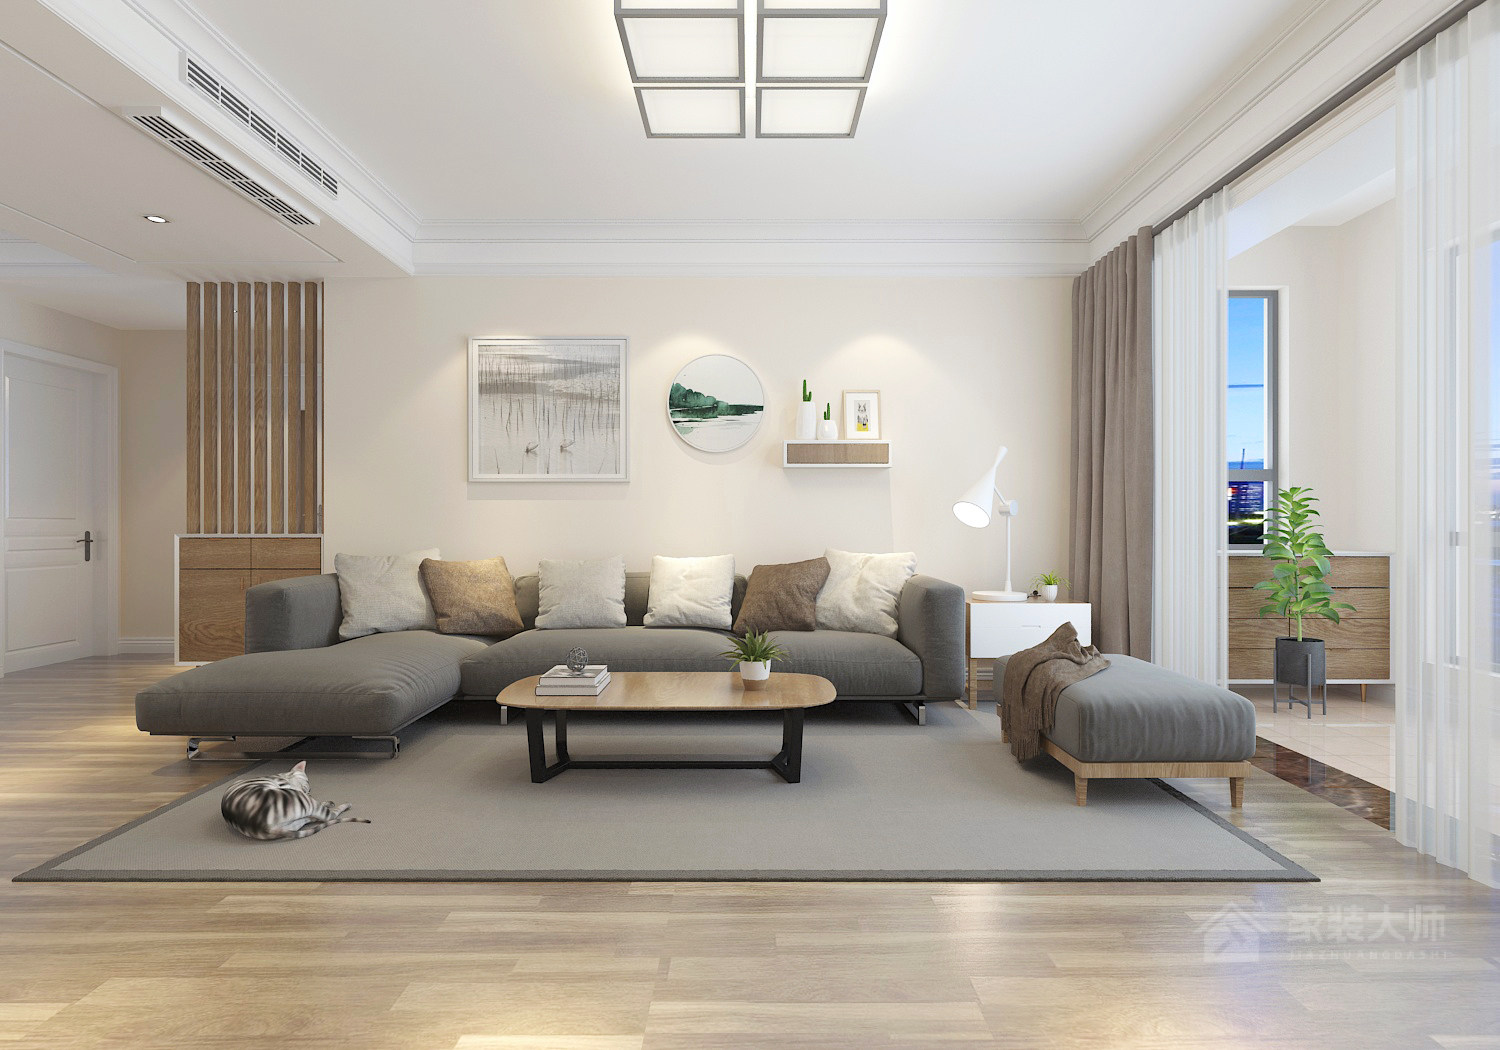 日式客厅灰色布艺转角沙发效果图